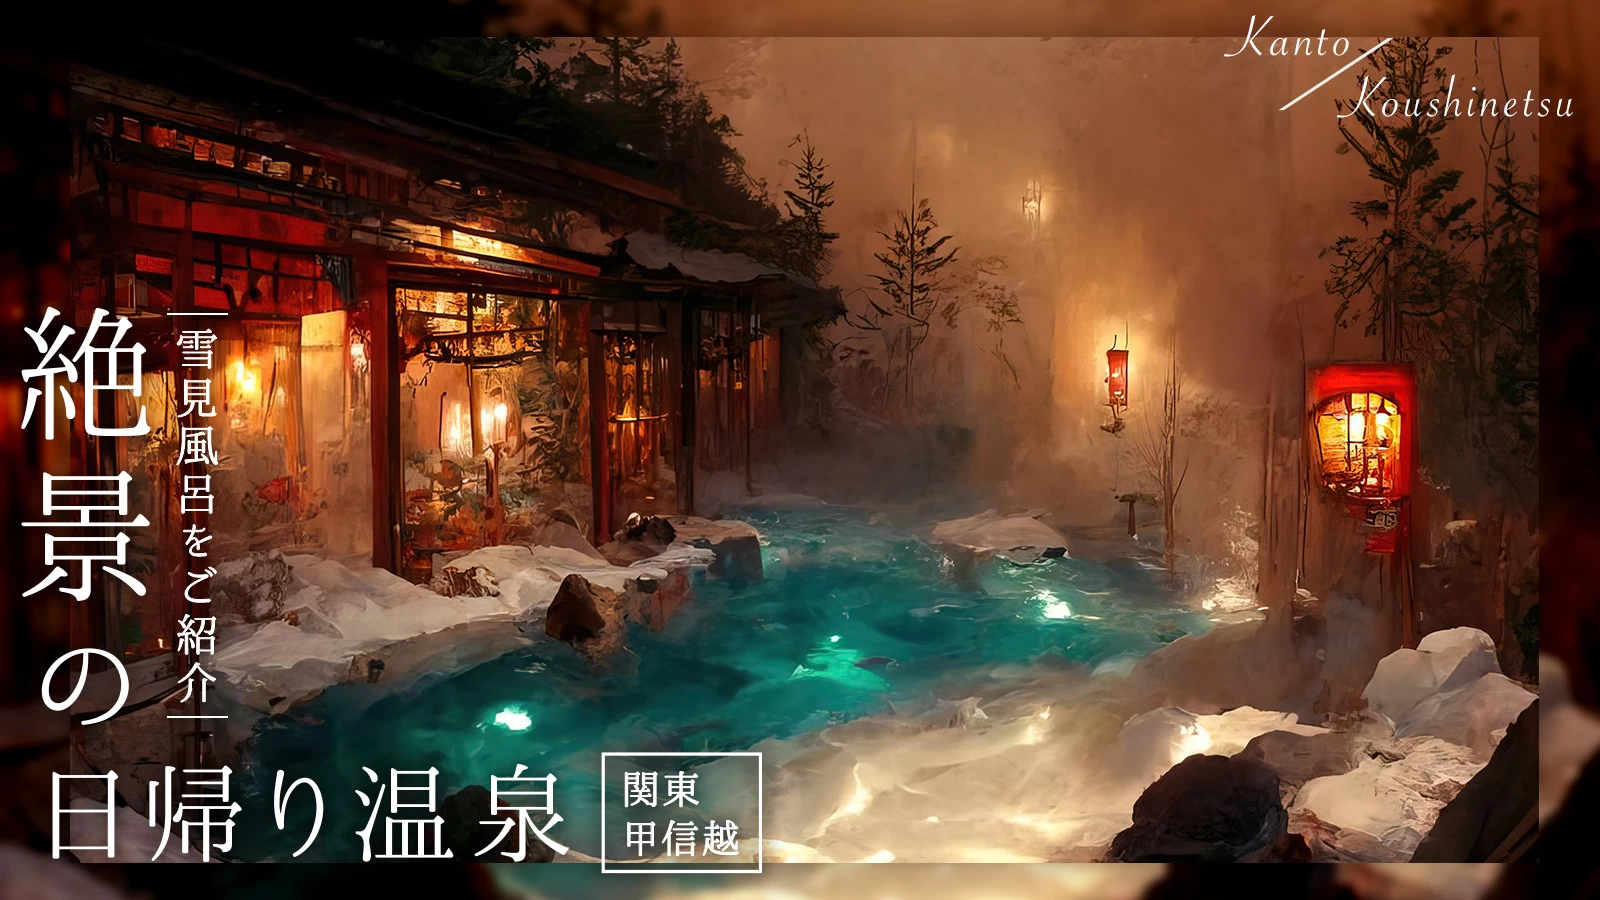 【関東・甲信越】冬は雪見風呂で癒される絶景の日帰り温泉5選